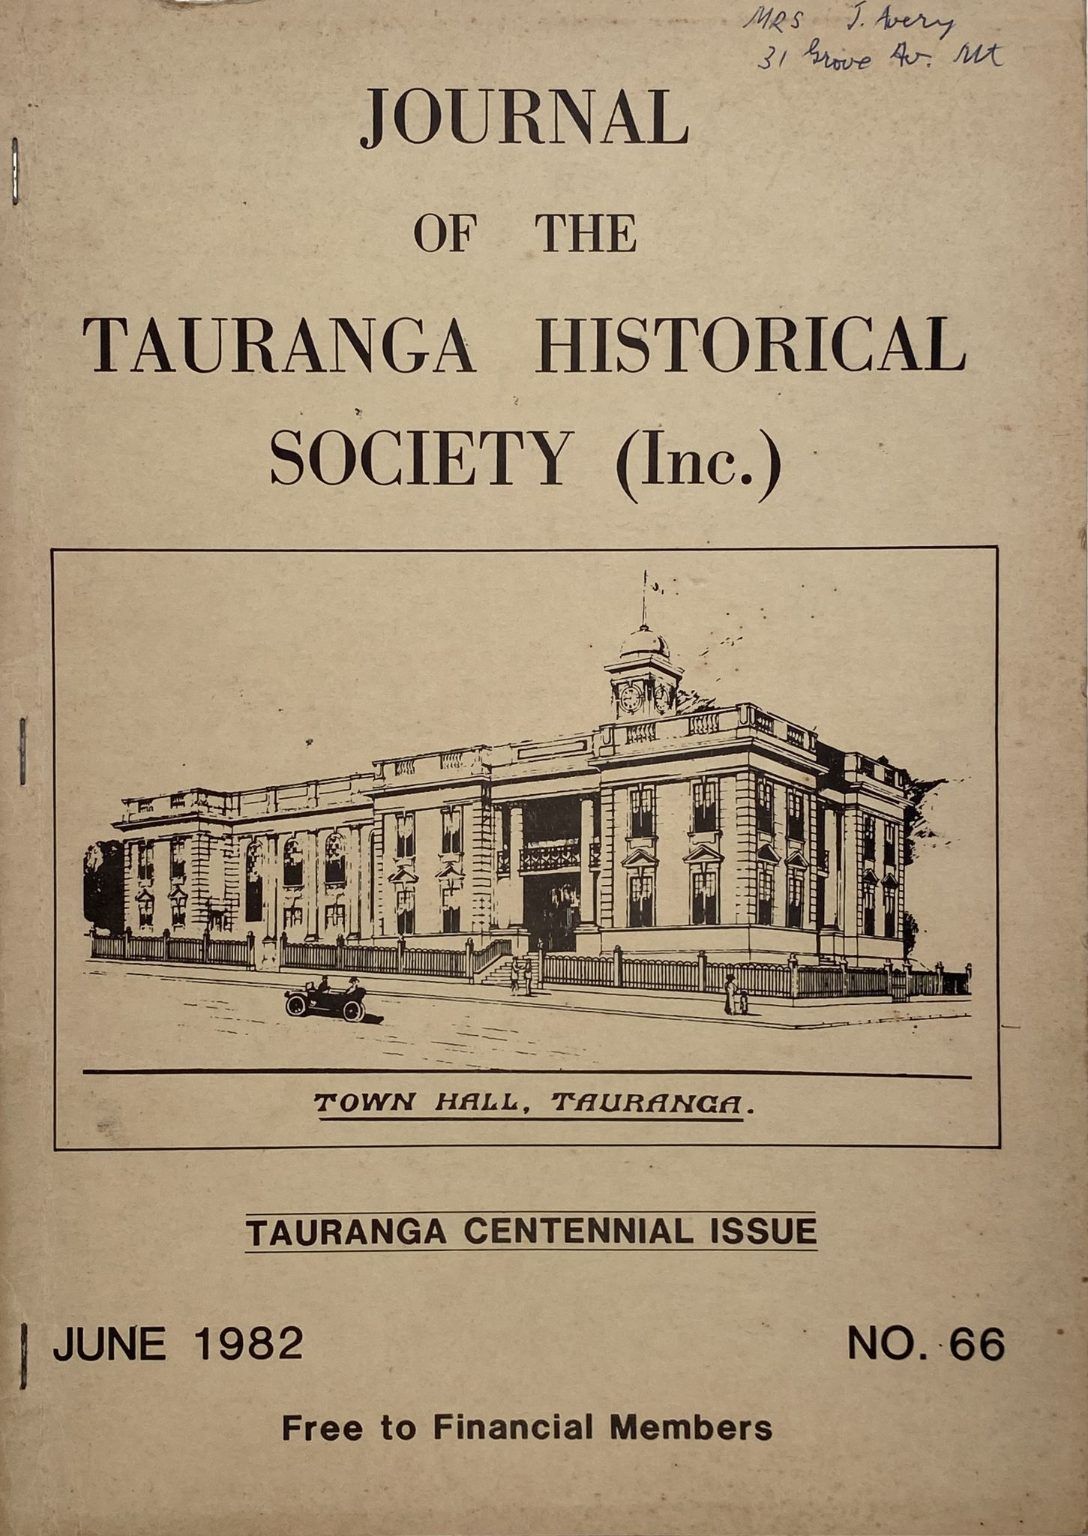 JOURNAL OF THE TAURANGA HISTORICAL SOCIETY (Inc.): Tauranga Centennial Issue, Number 66, June 1982